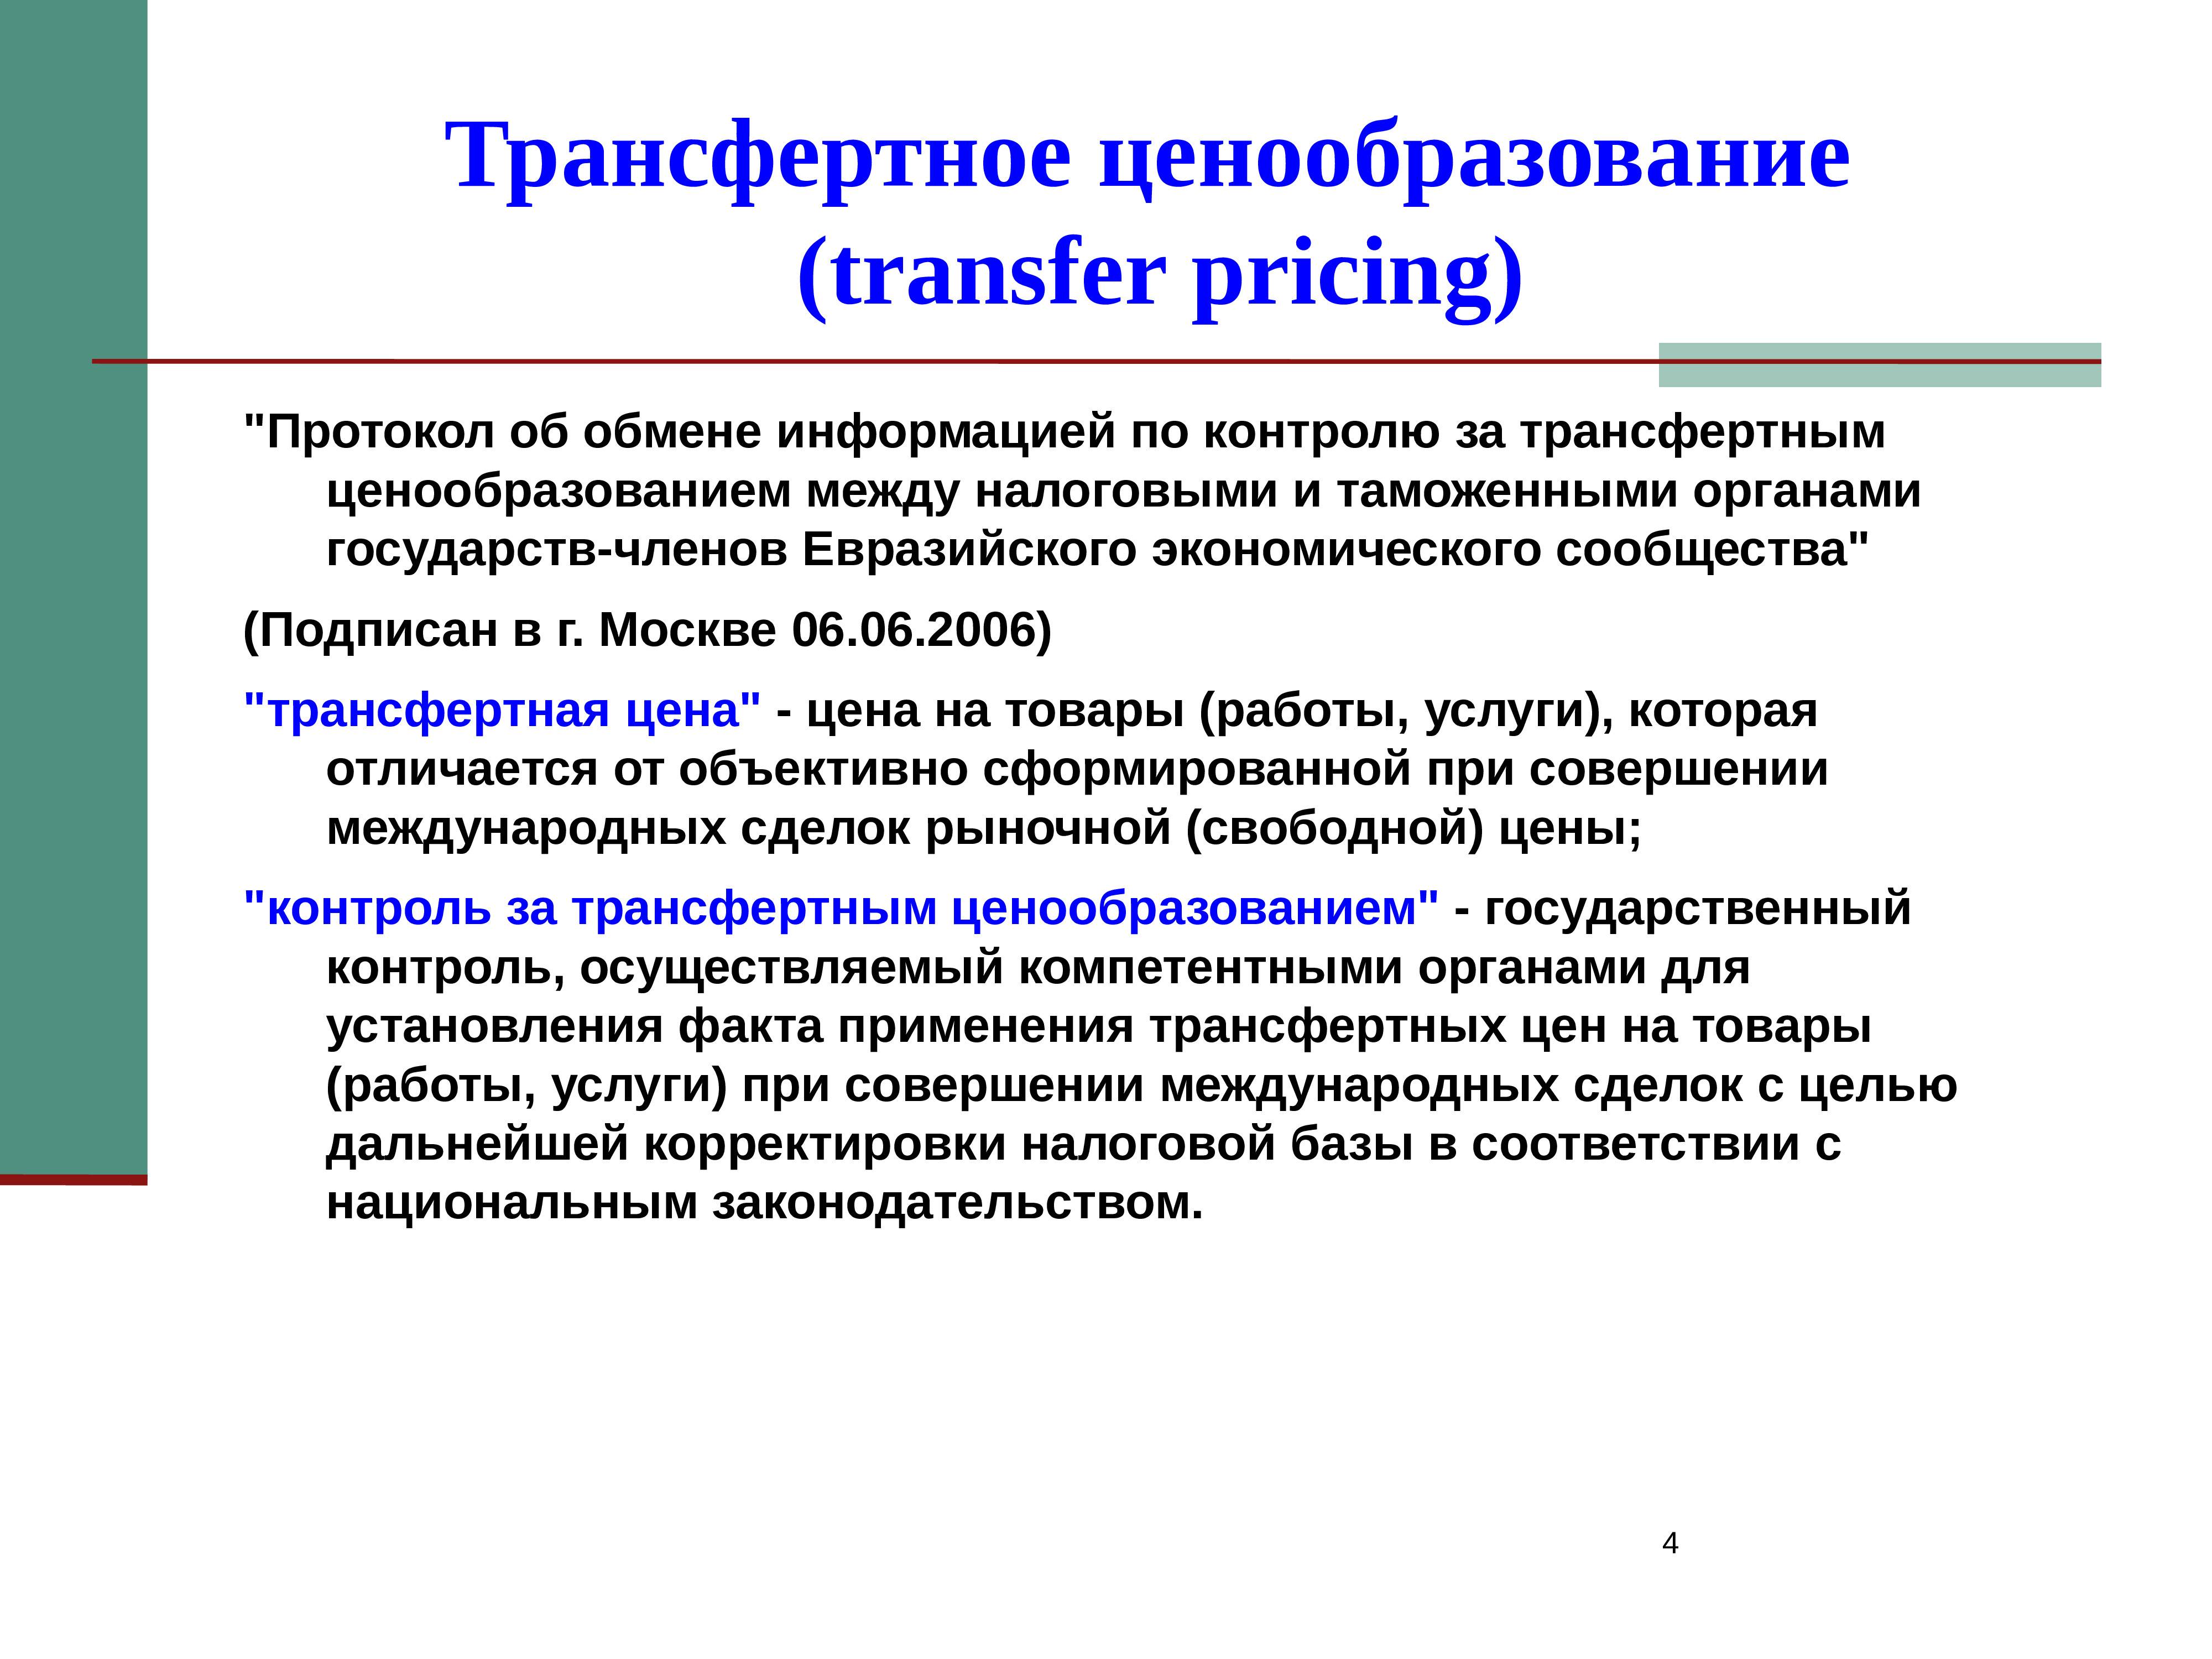 Коммерческое ценообразования. Транспортное ценообразование. Трансфертное ценообразование. Методы трансфертного ценообразования. Методика трансфертного ценообразования.